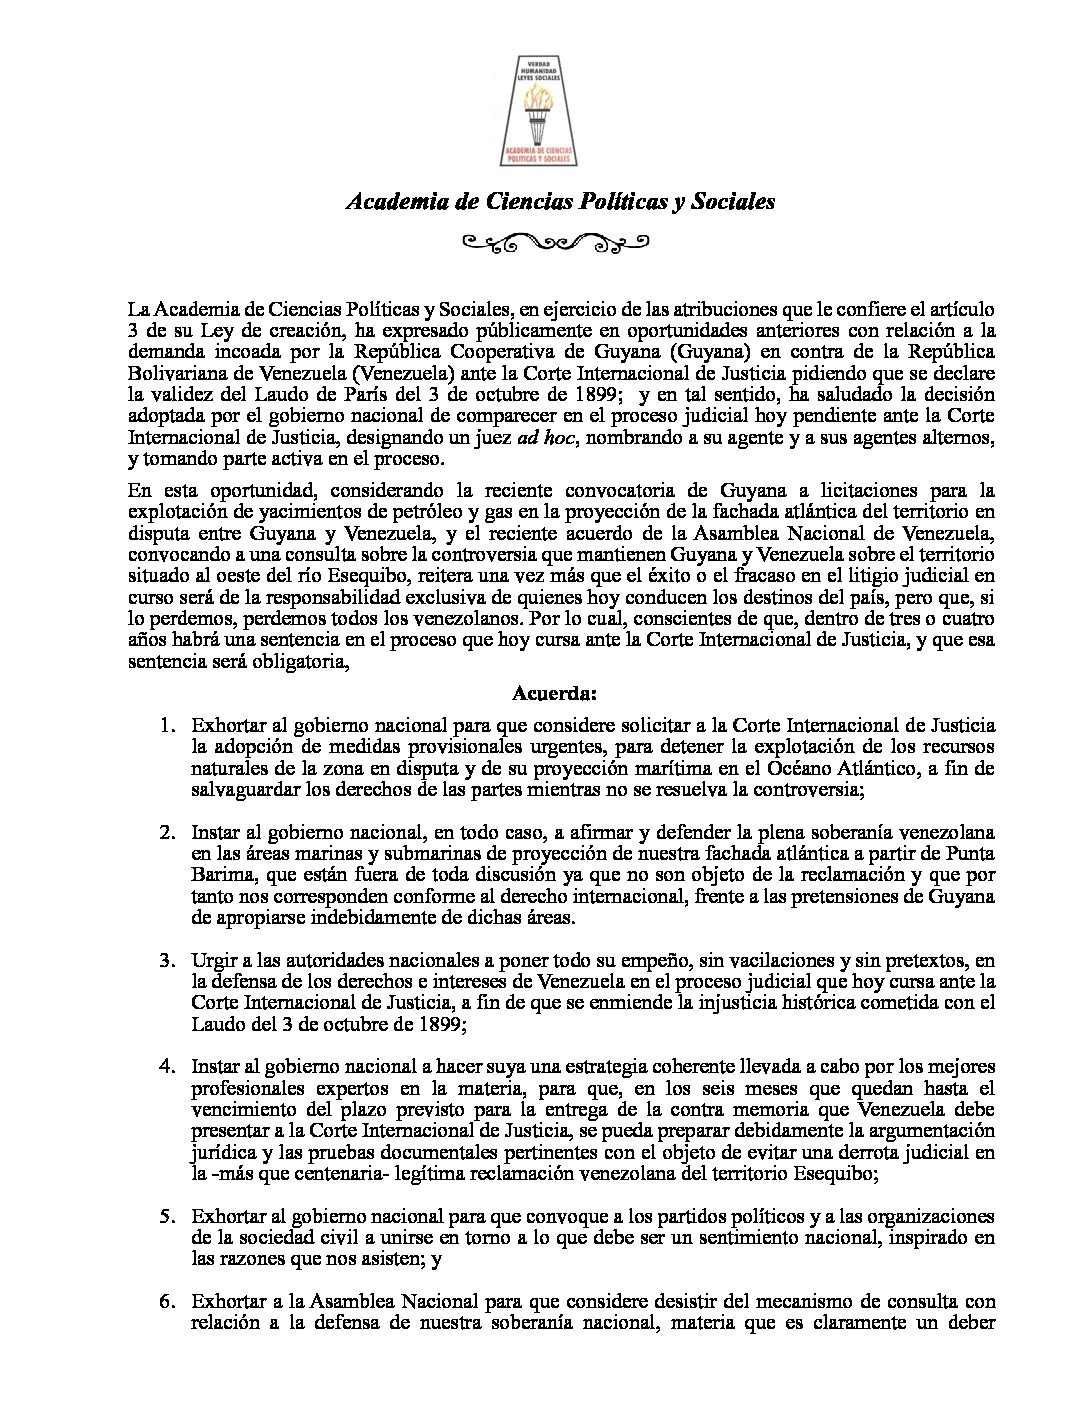 Comunicado de la Academia de Ciencias Políticas y Sociales sobre la controversia que mantienen Guyana y Venezuela sobre el territorio del Esequibo. Caracas, 05 de octubre de 2023